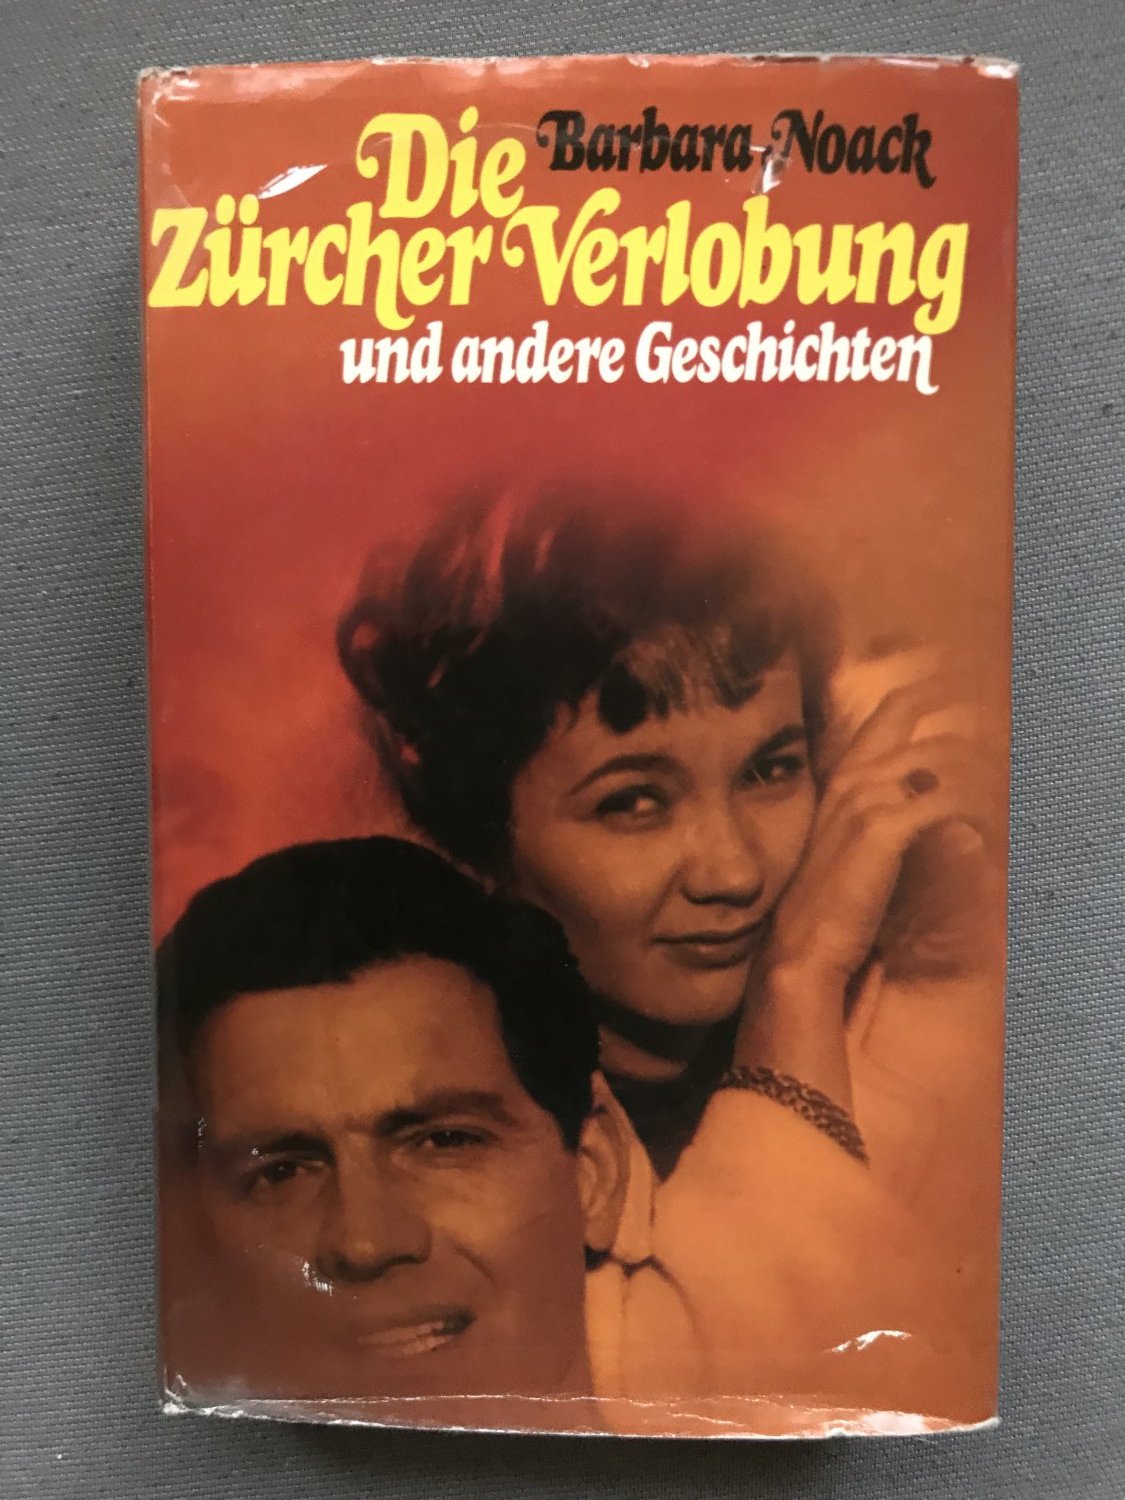 https://images.booklooker.de/x/02GDiu/Barbara-Noack+Die-Z%C3%BCrcher-Verlobung-und-andere-Geschichten.jpg